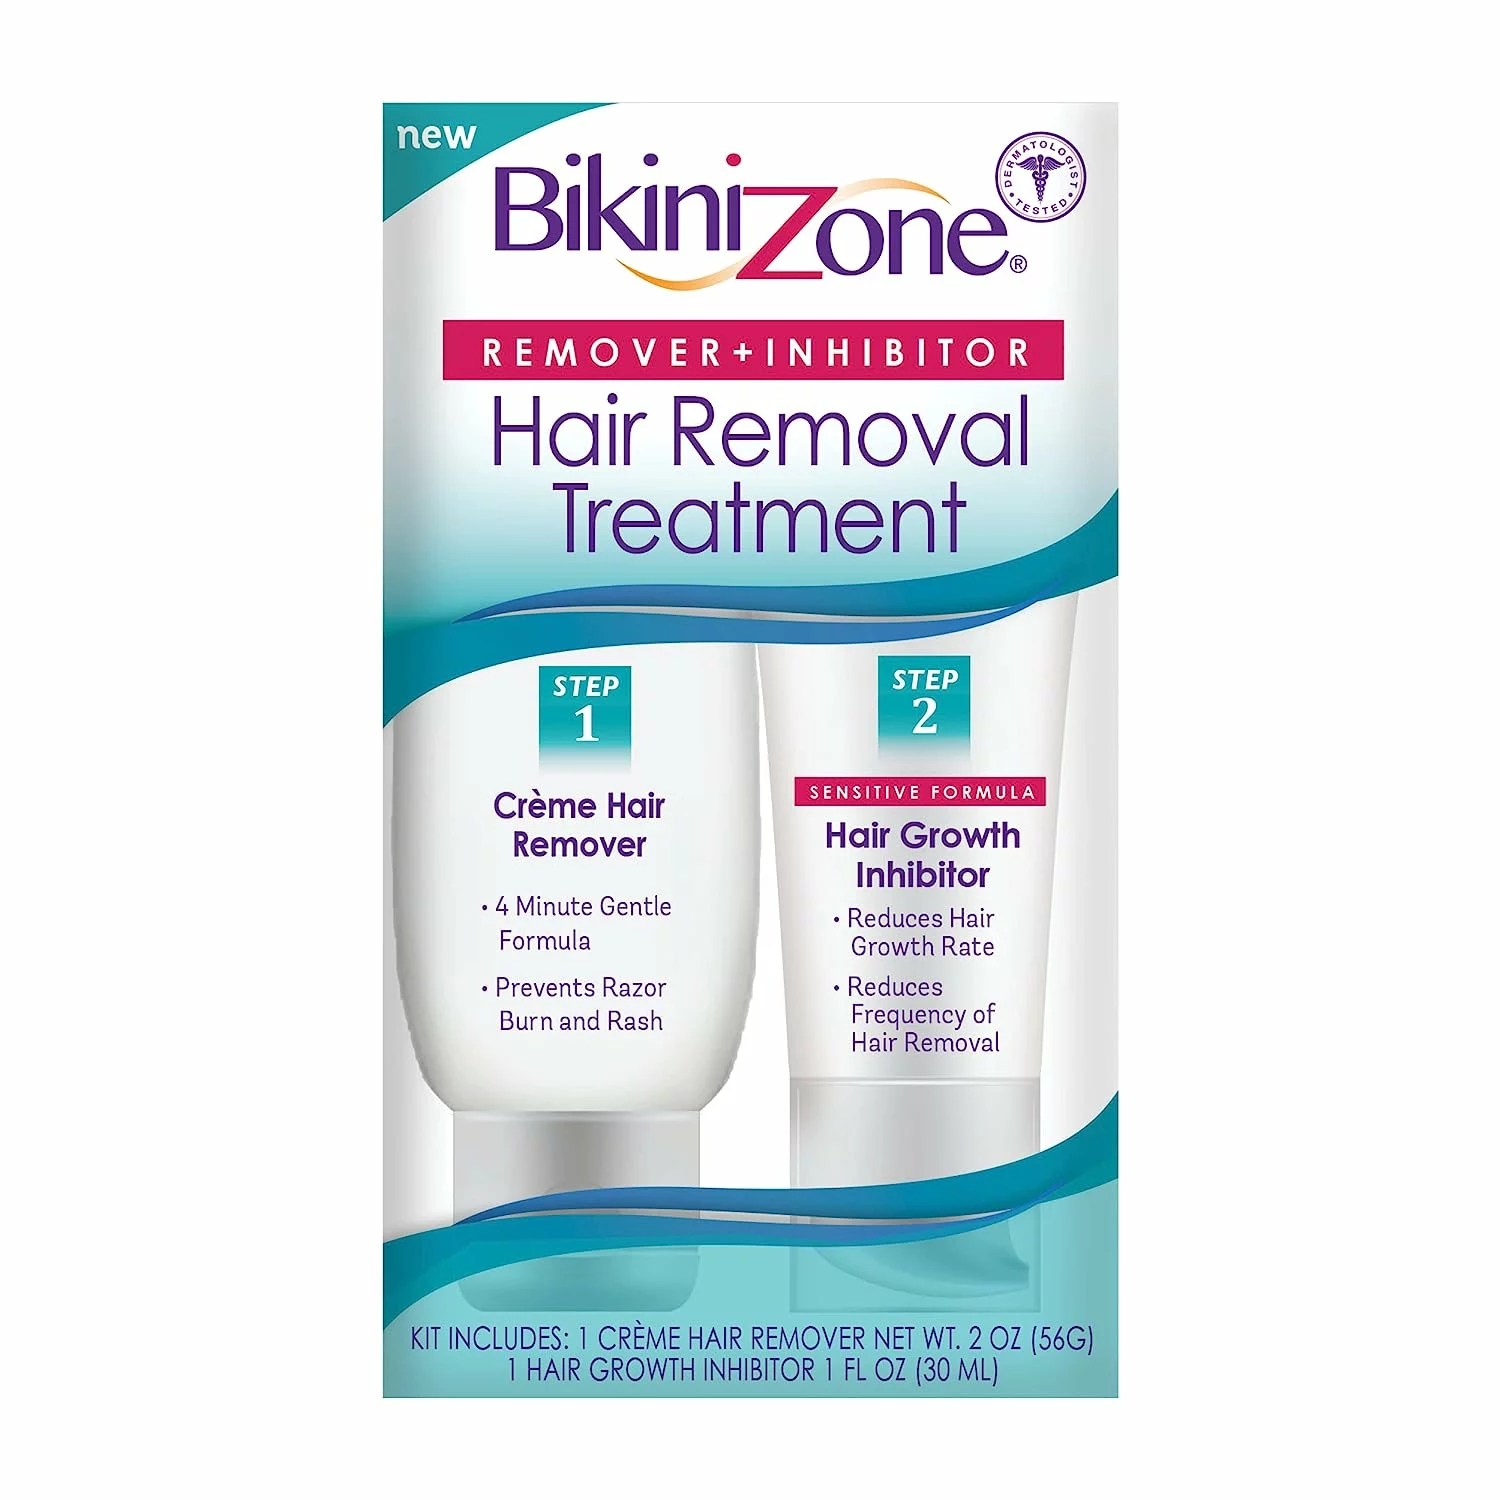 bikinizone hair removal treatment kit